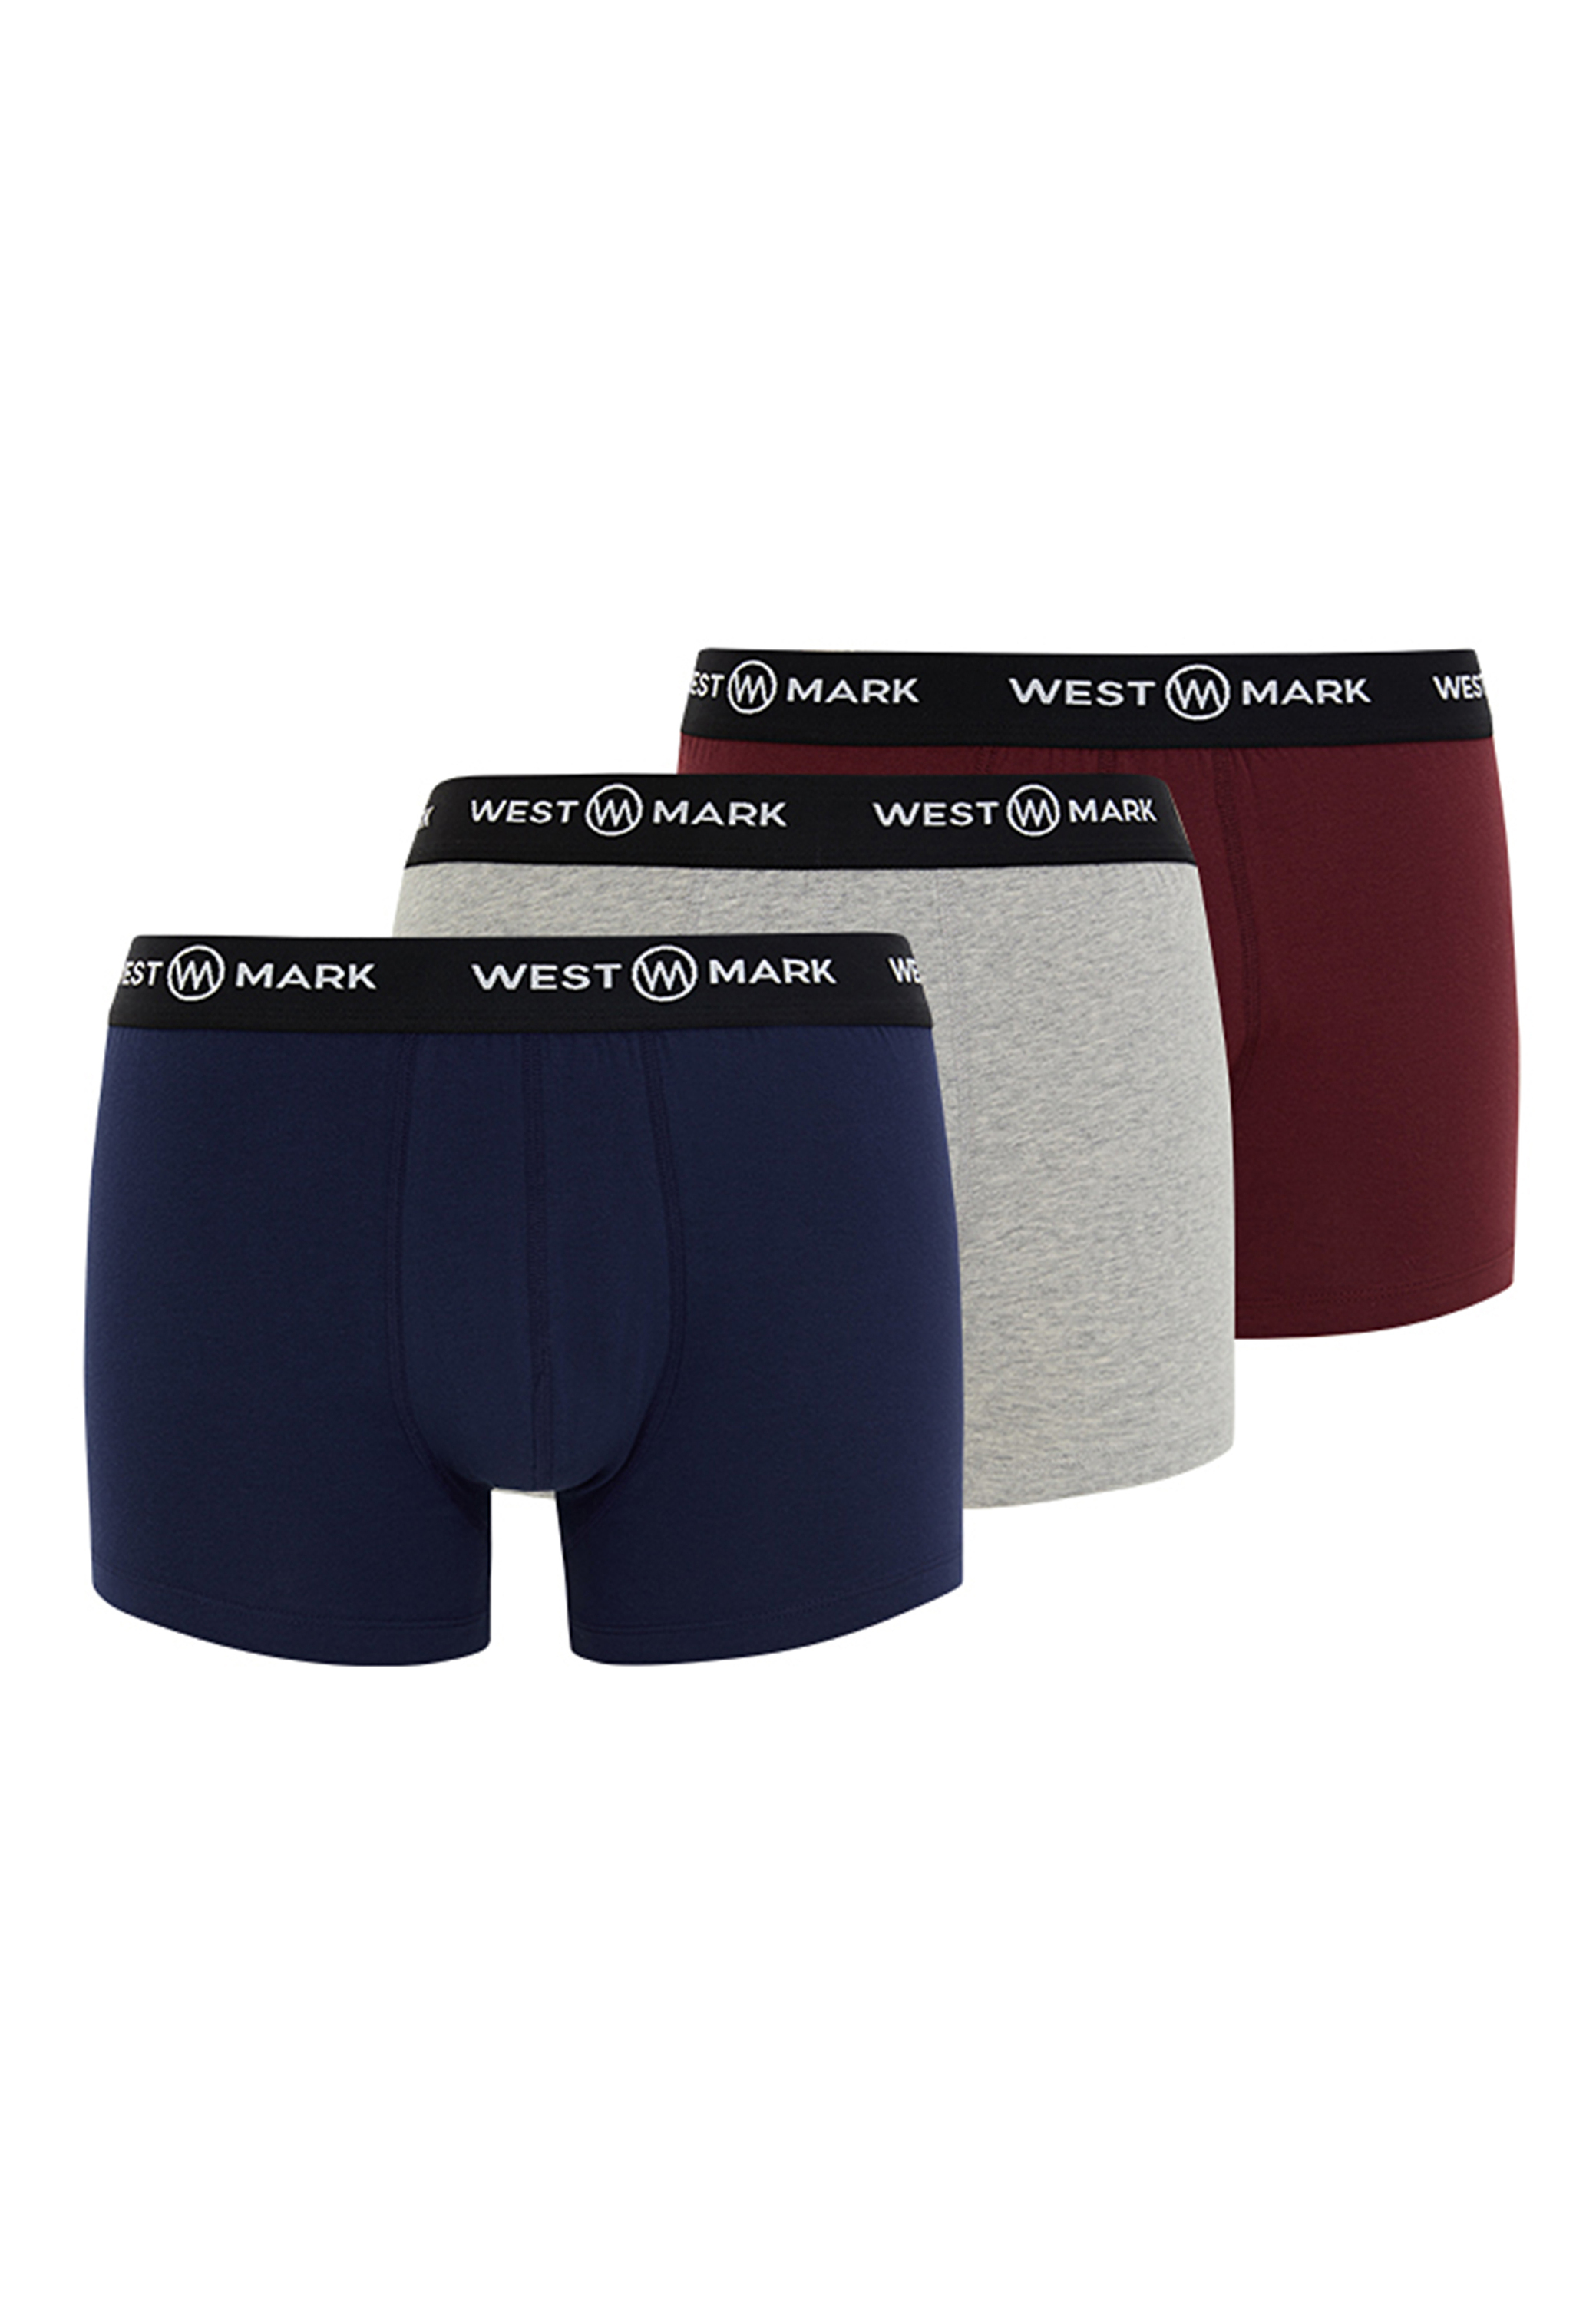 Трусы Westmark London Retro Short/Pant Oscar, цвет Navy/Bordeaux/Grey Melange